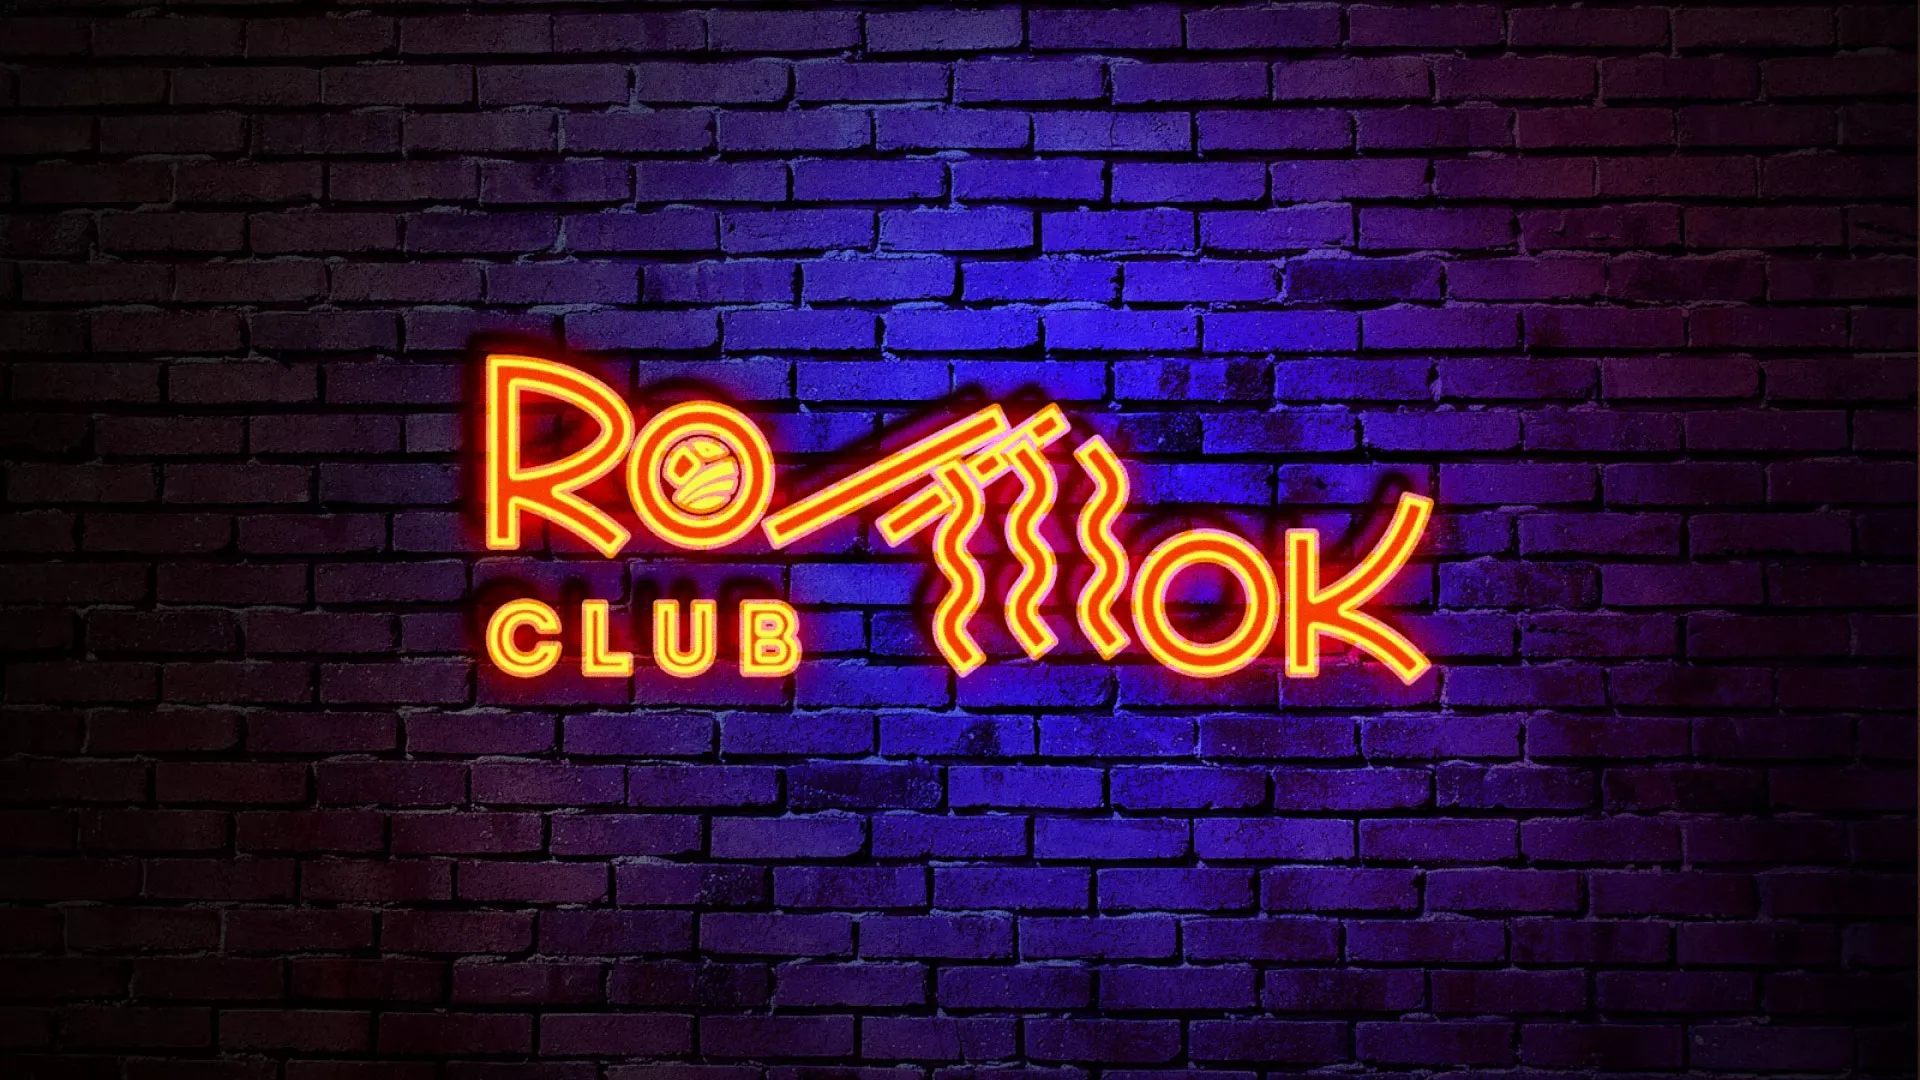 Разработка интерьерной вывески суши-бара «Roll Wok Club» в Харабалях